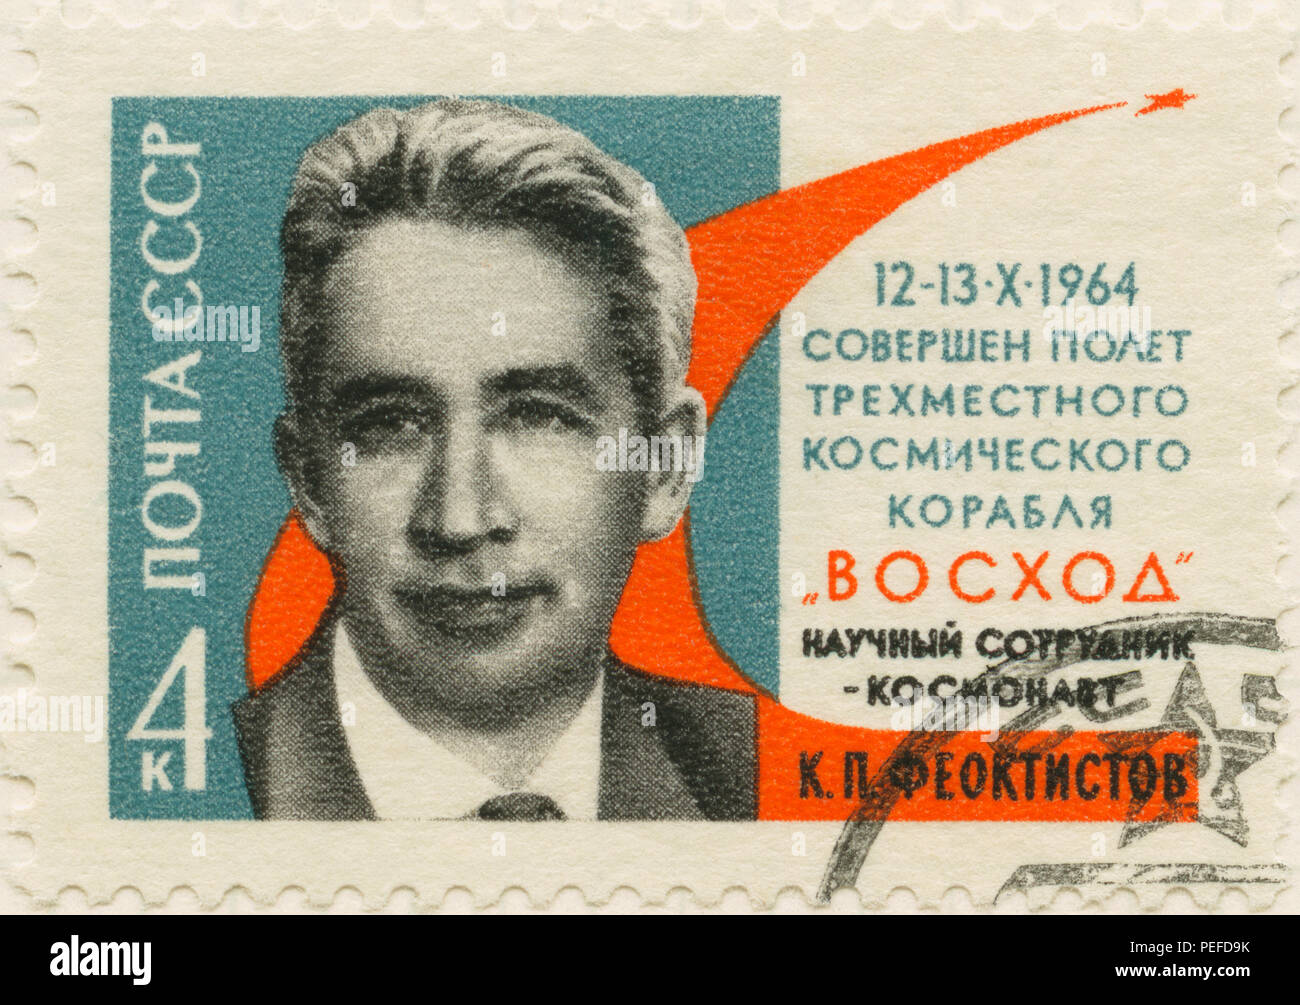 Konstantin Petrovitch Feoktistov (1926-2009) le cosmonaute soviétique et l'éminent ingénieur spatial, timbre-poste commémoratif, Union soviétique, 1964 Banque D'Images